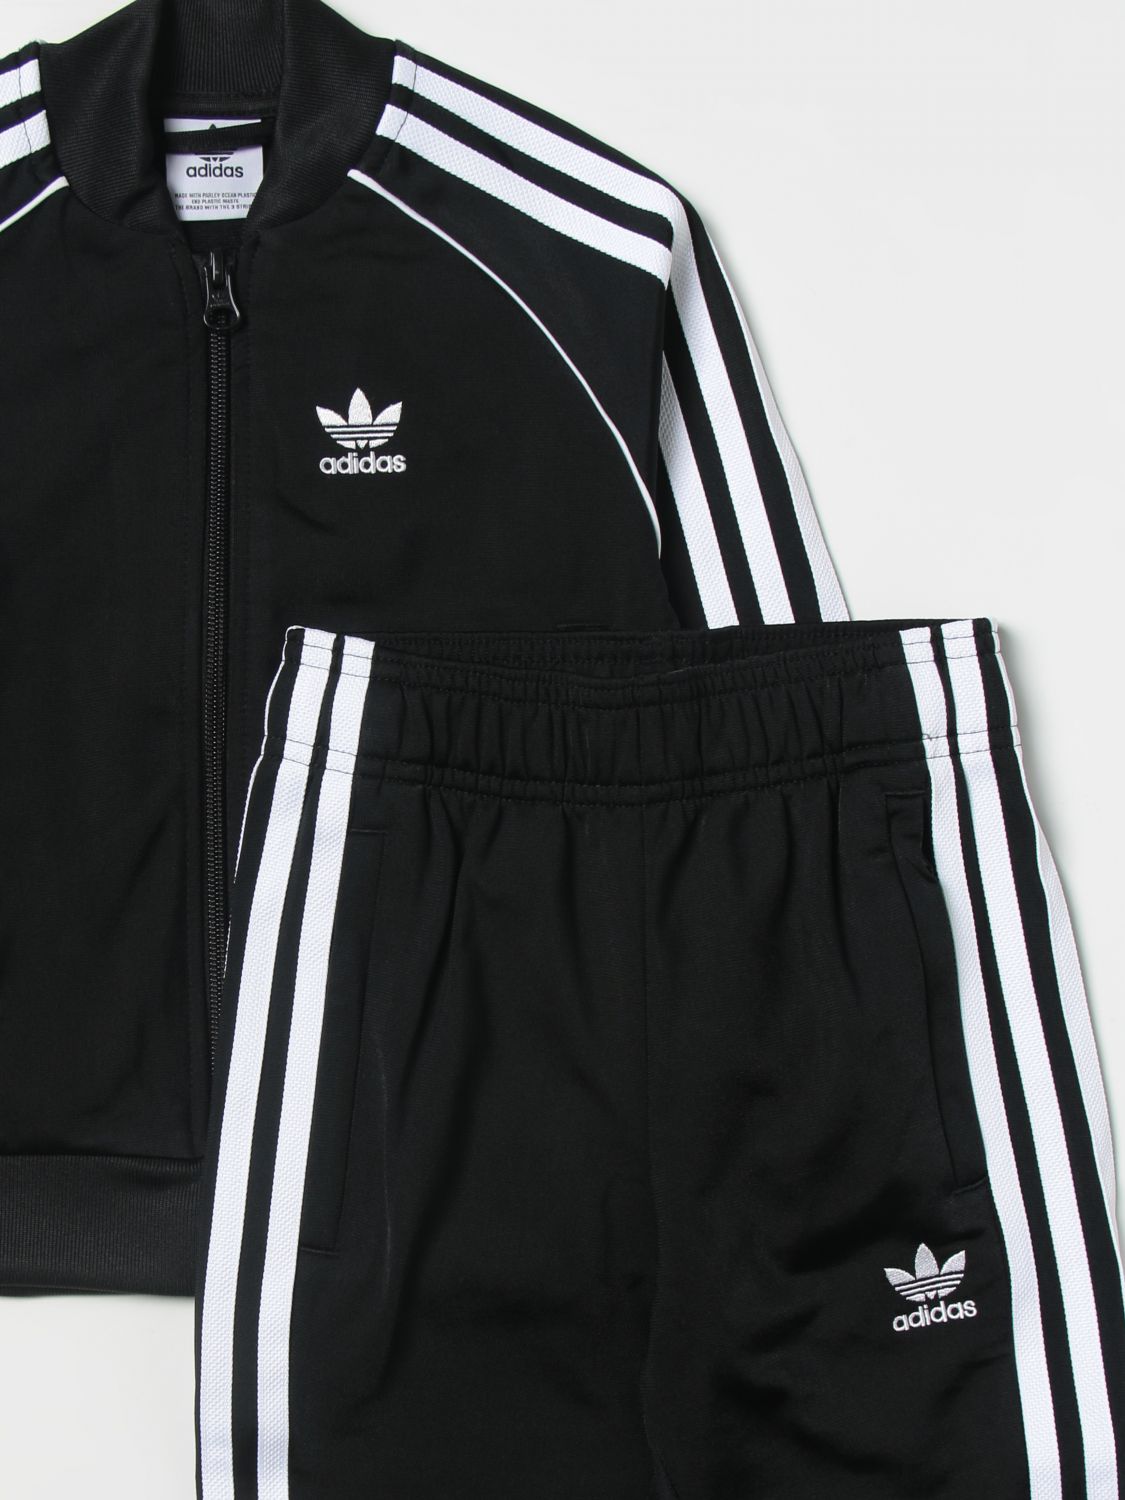 ADIDAS ORIGINALS: clothing set for boys - Black | Adidas Originals ...